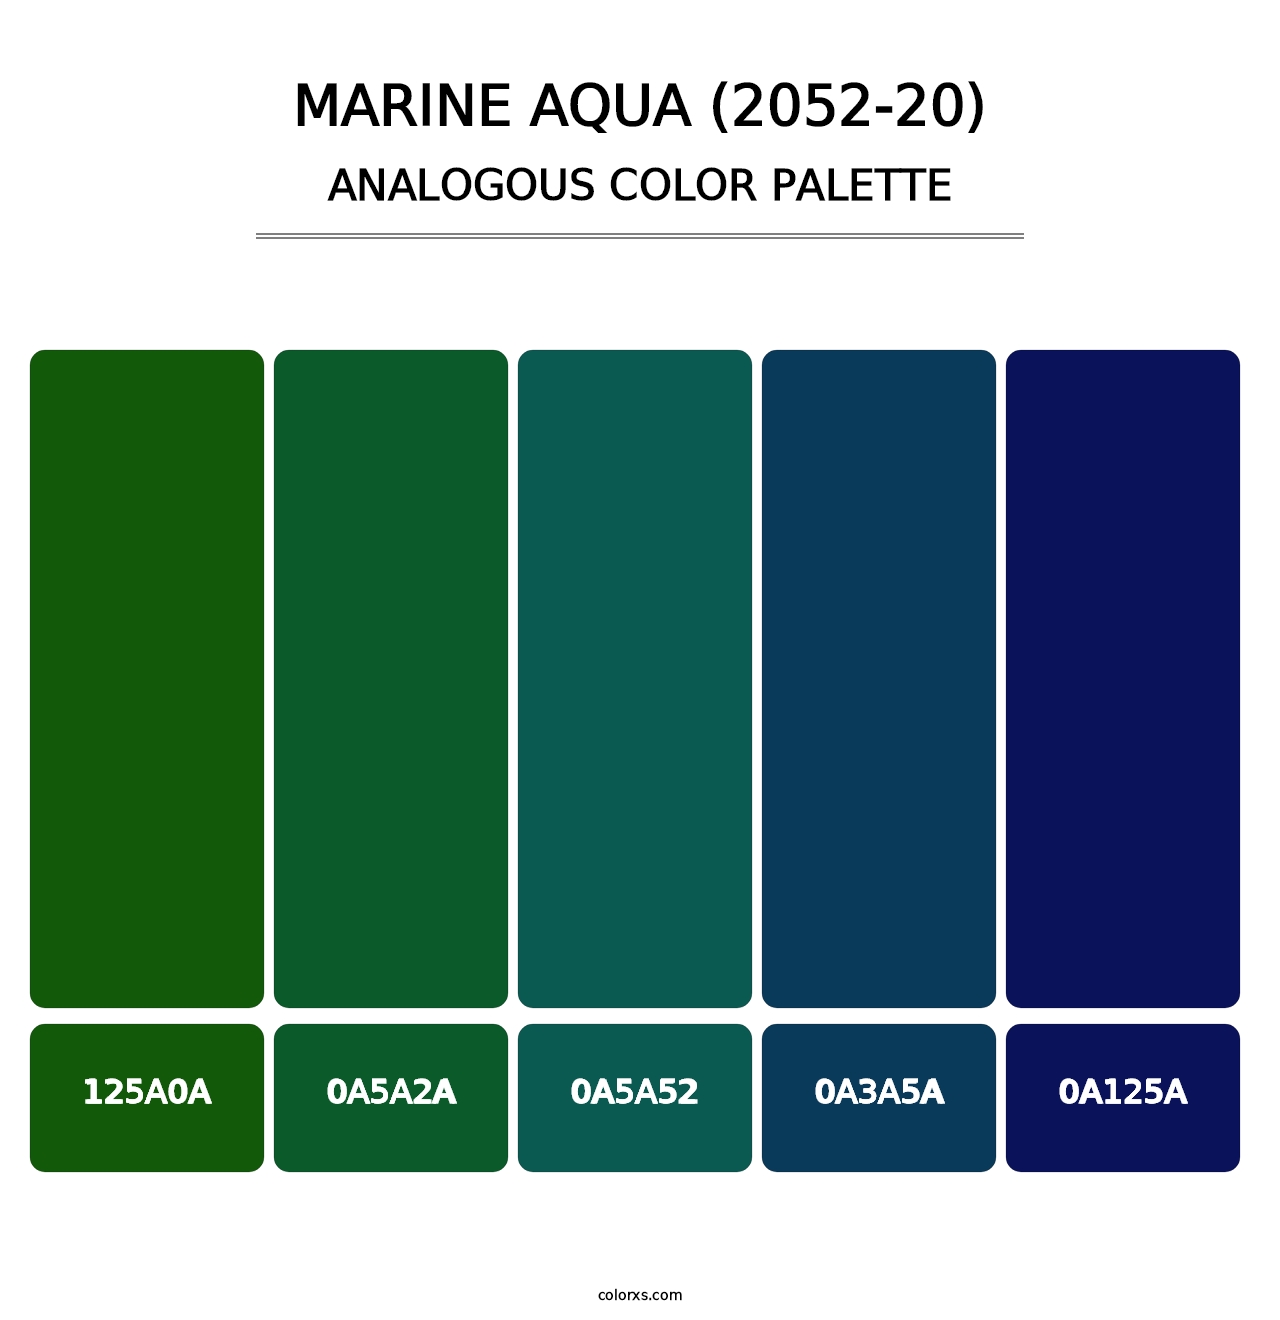 Marine Aqua (2052-20) - Analogous Color Palette